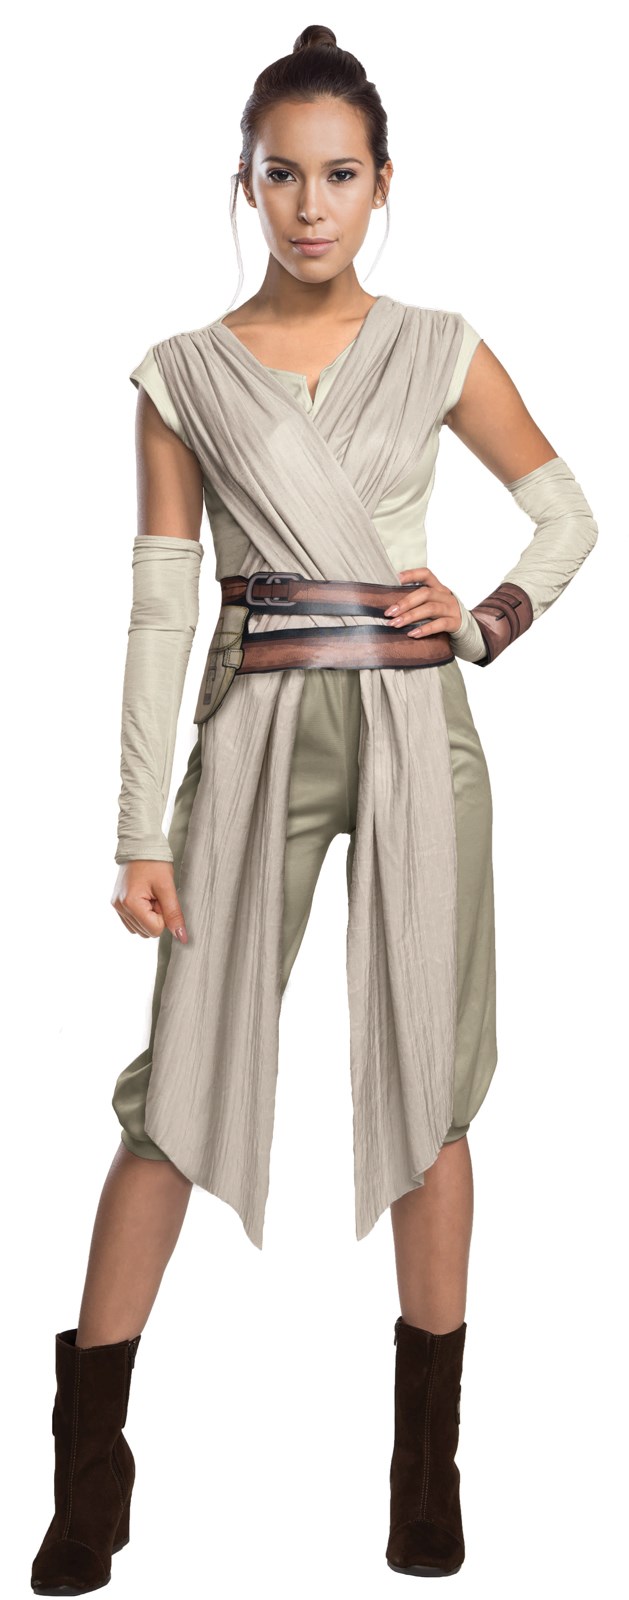 Star Wars Episode 7 - Womens Deluxe Rey Costume